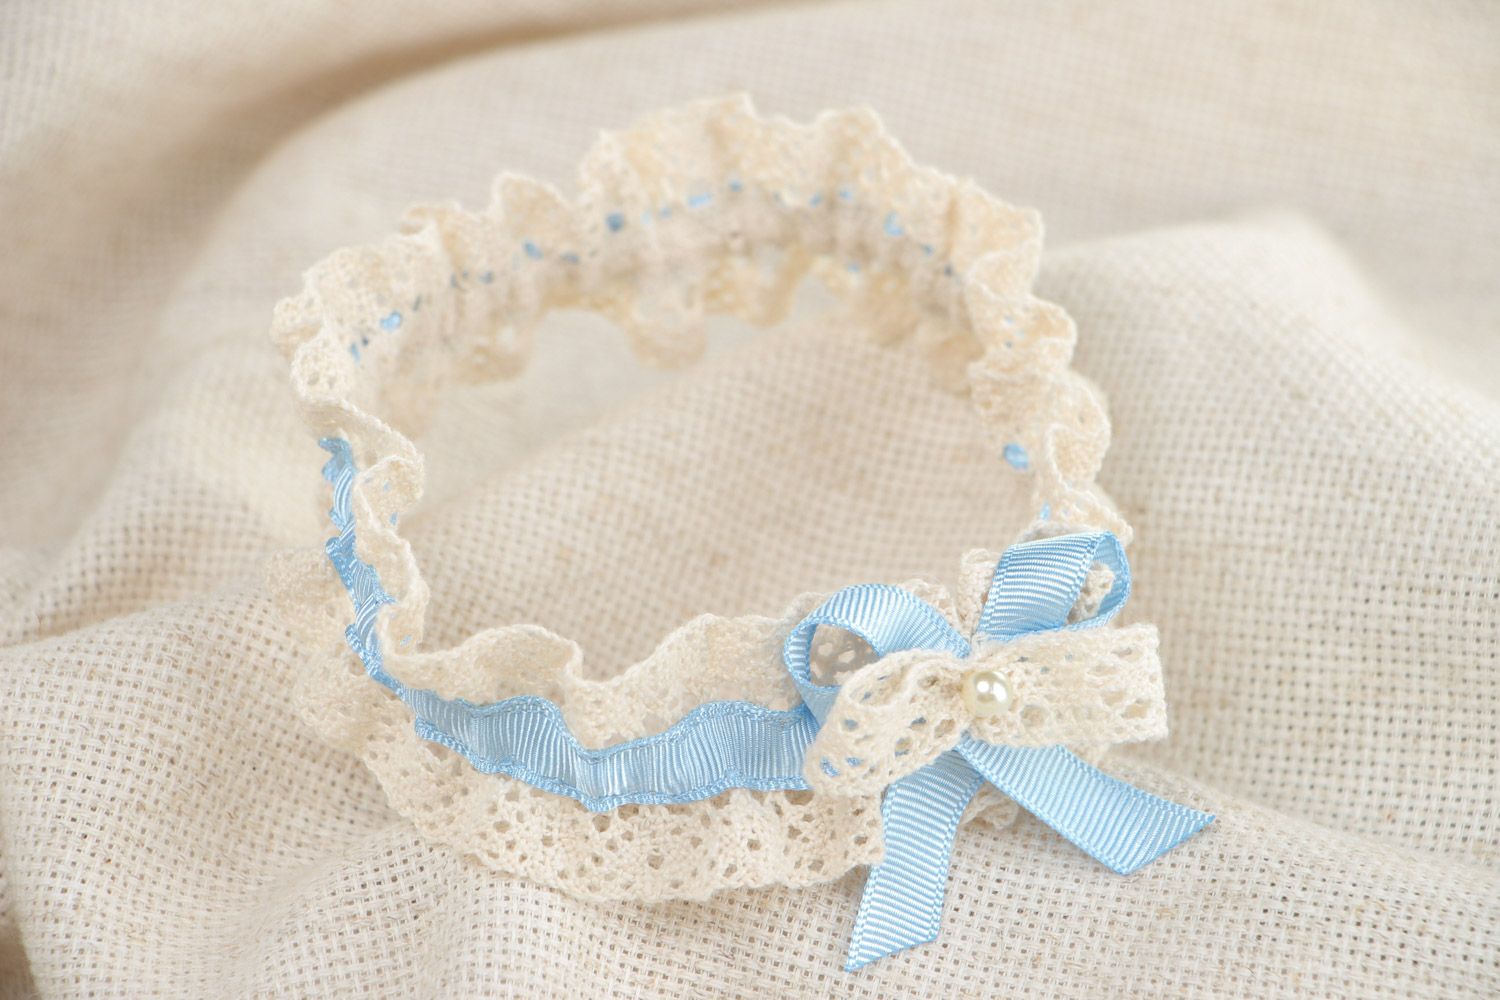 Handmade Strumpfband für Hochzeit auf Bein von Braut mit Perle originell schön foto 1